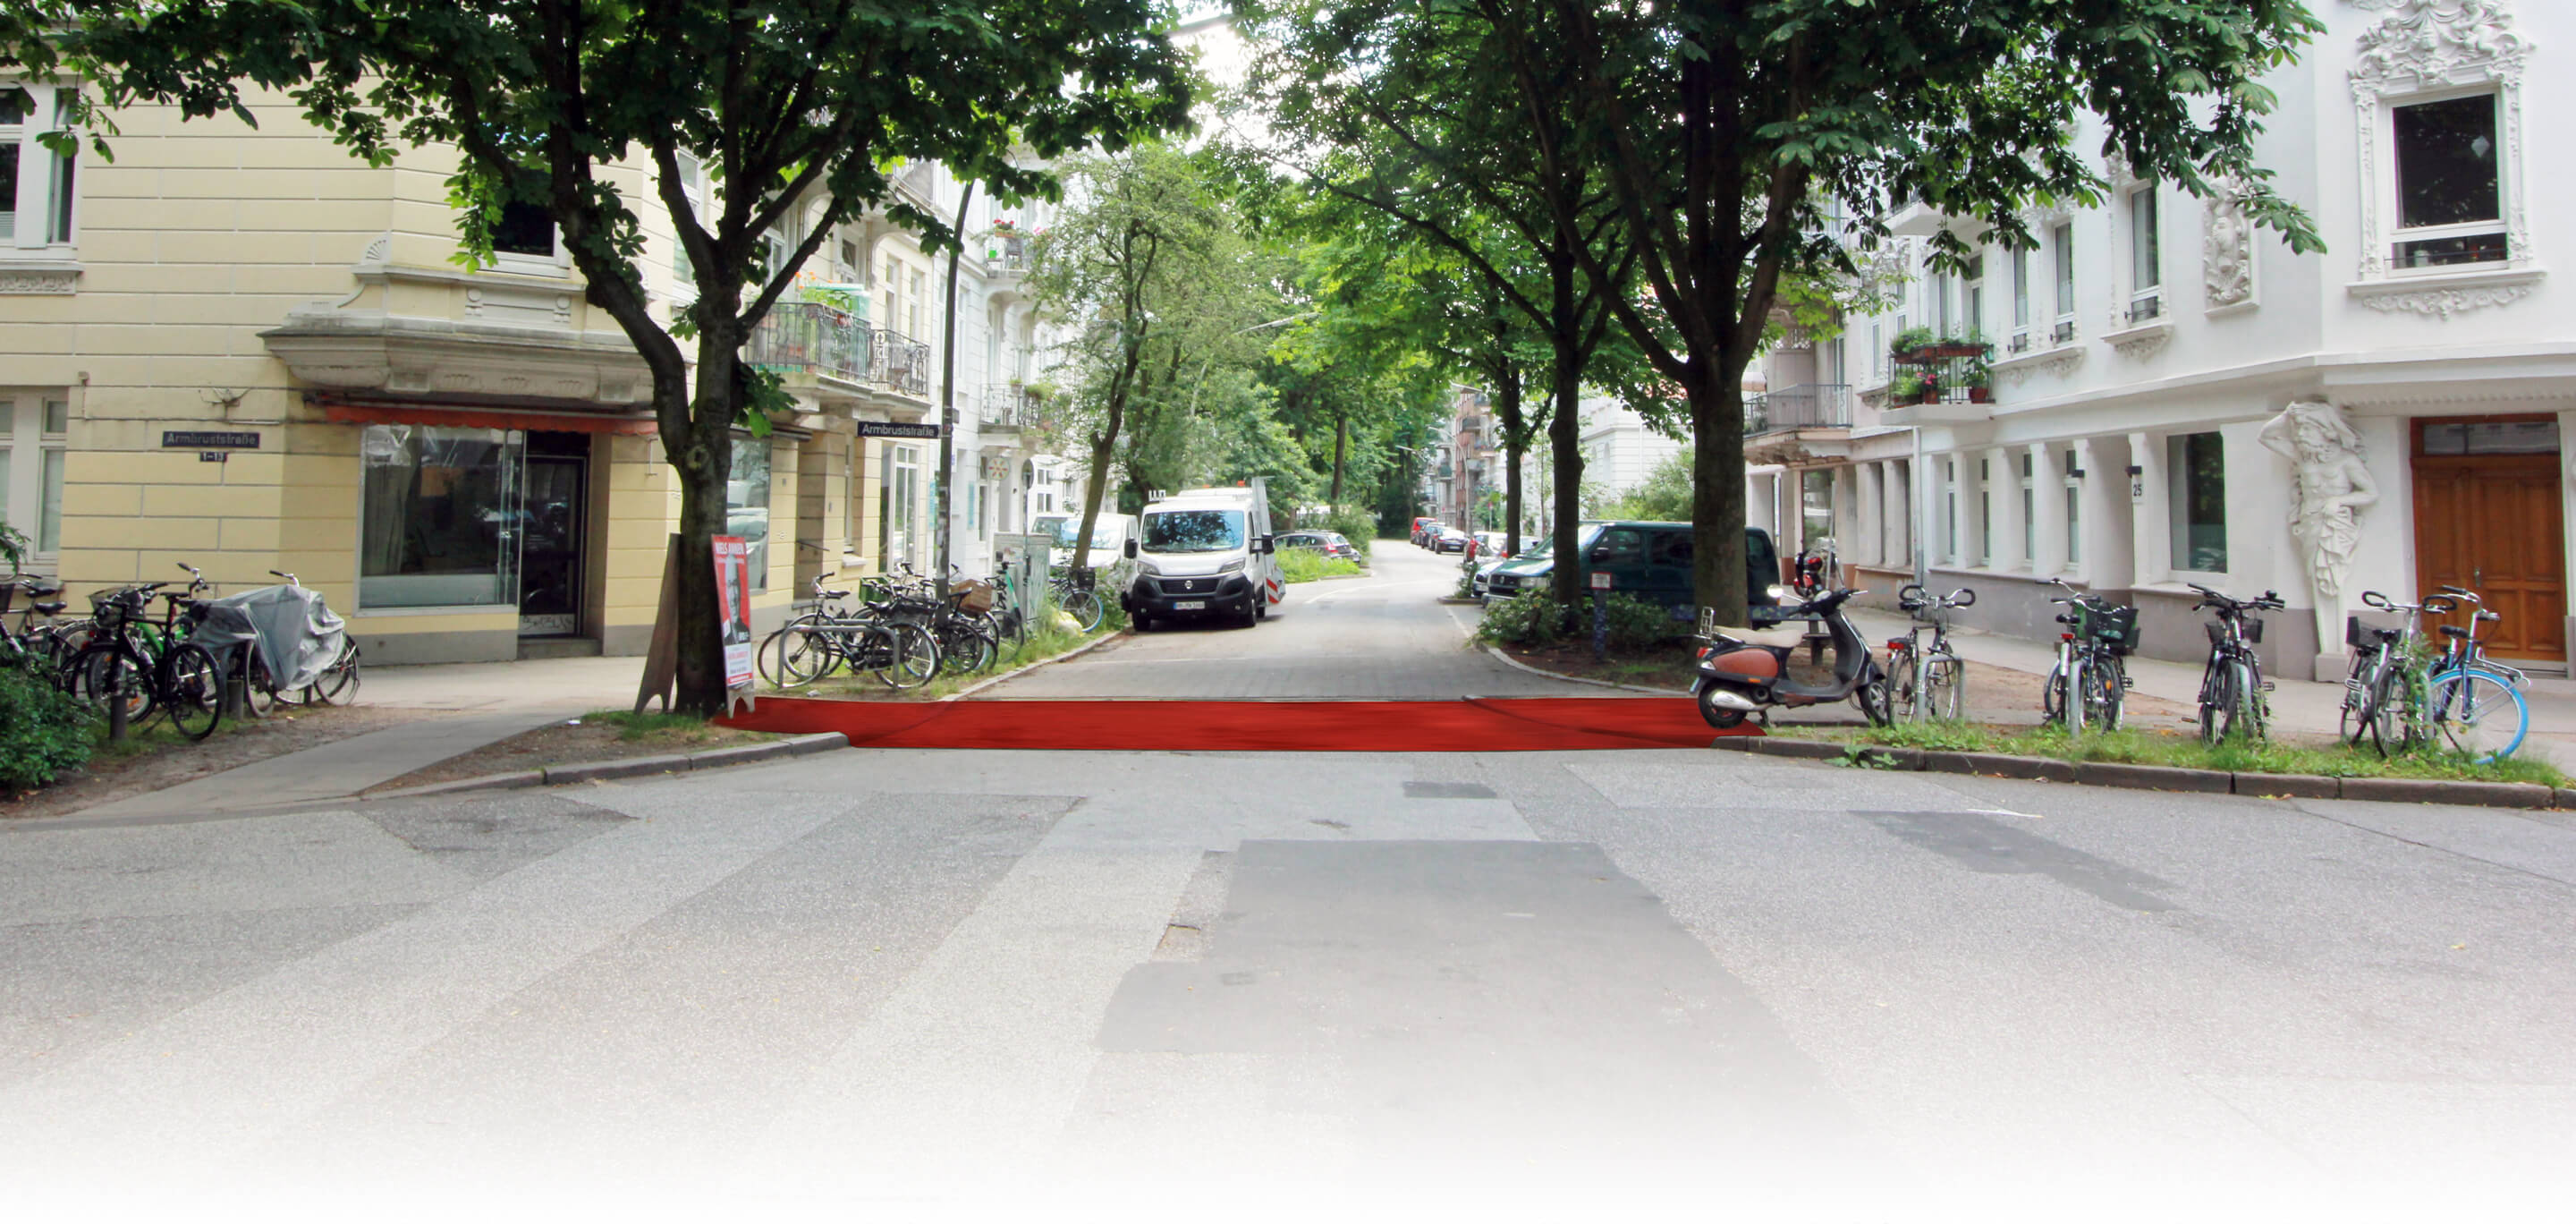 Roter Teppich für Kinder in der Rellinger Straße